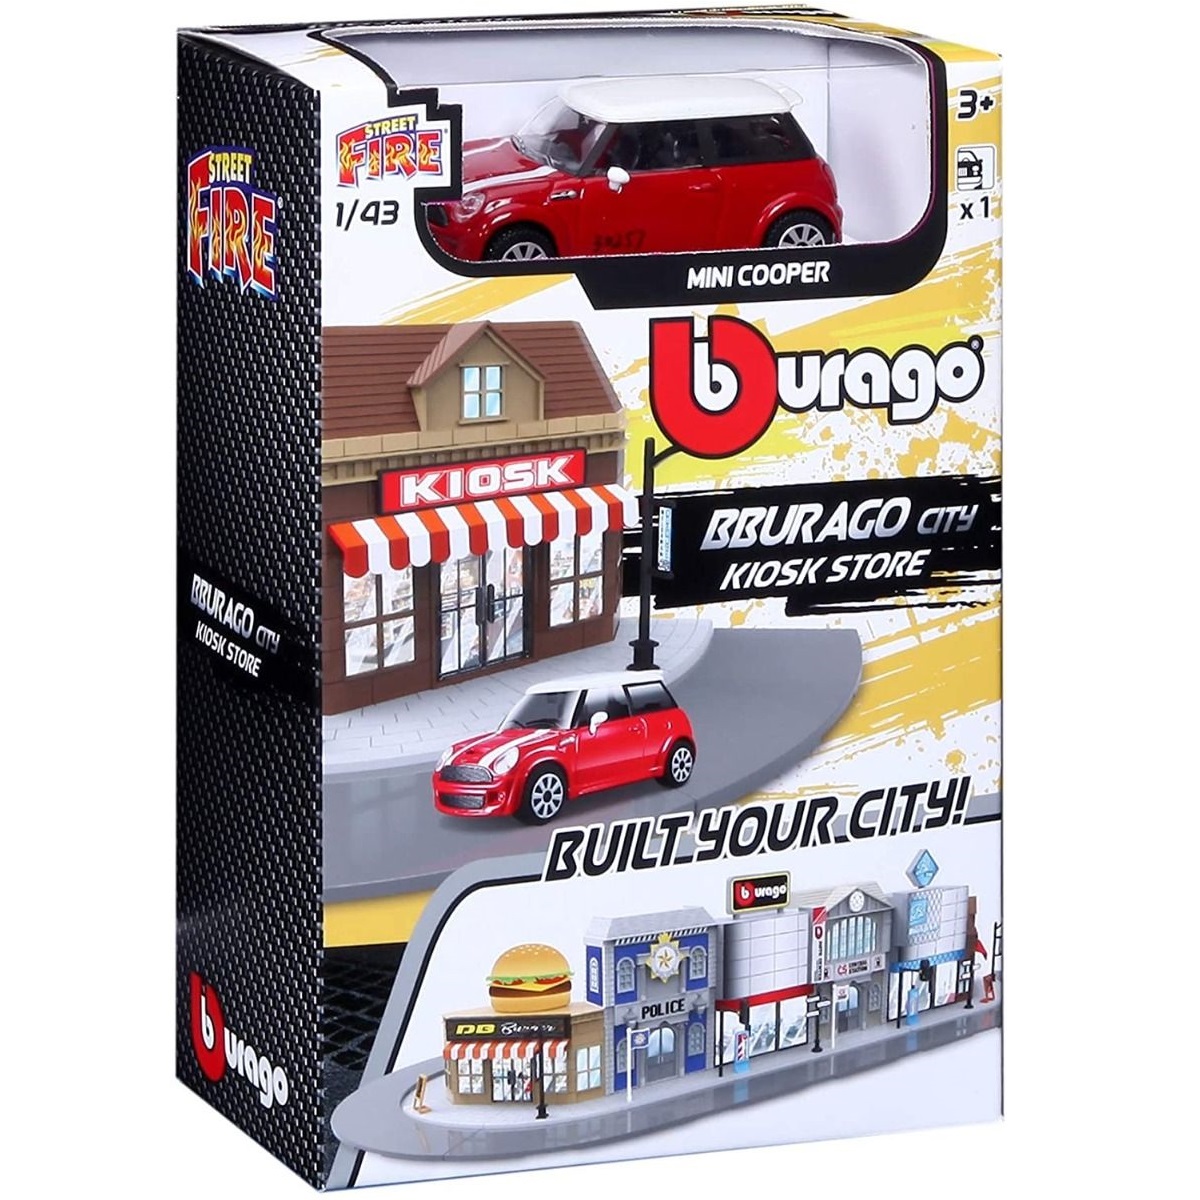 Игровой набор BBURAGO Магазин-киоск с металлической машинкой, 1:43, красный, 18-31506 игровой коврик bburago junior ferrari junior city playmat 16 85007